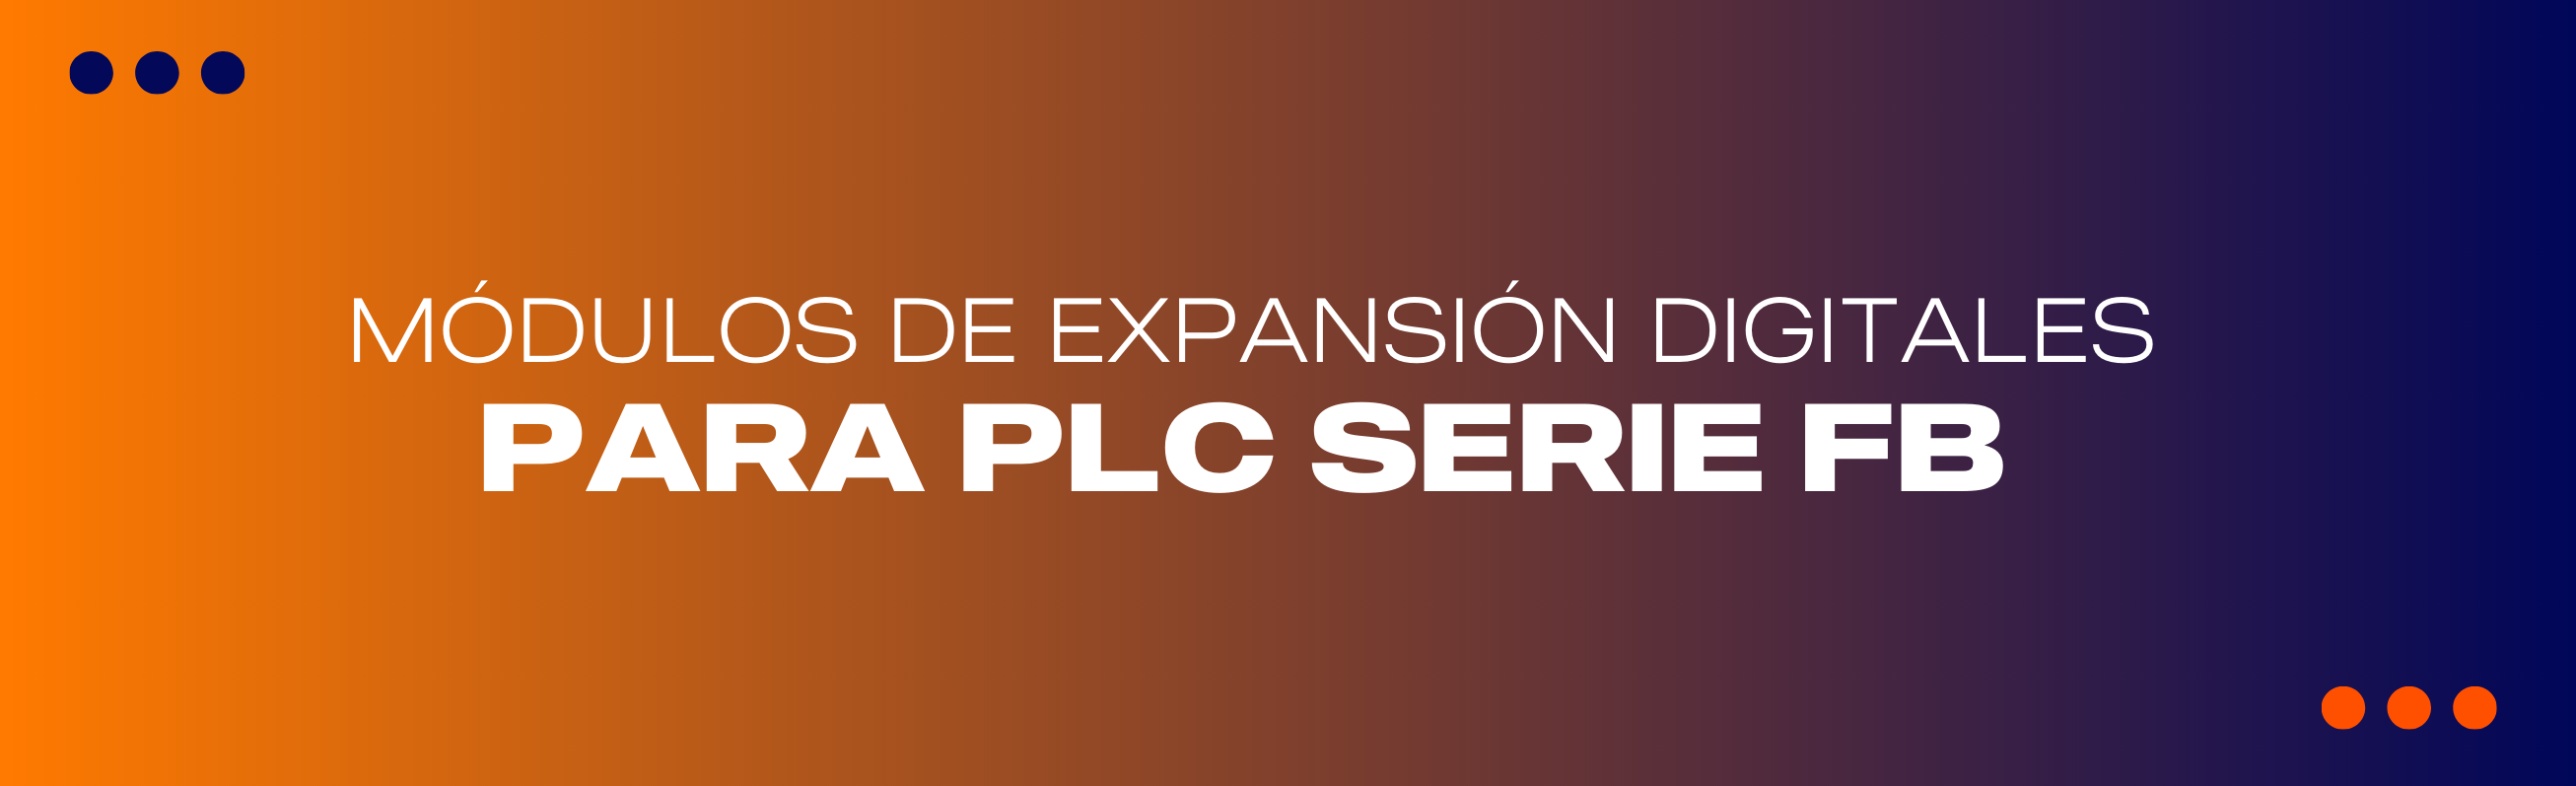 Módulos de Expansión Digitales para PLC Serie FBs